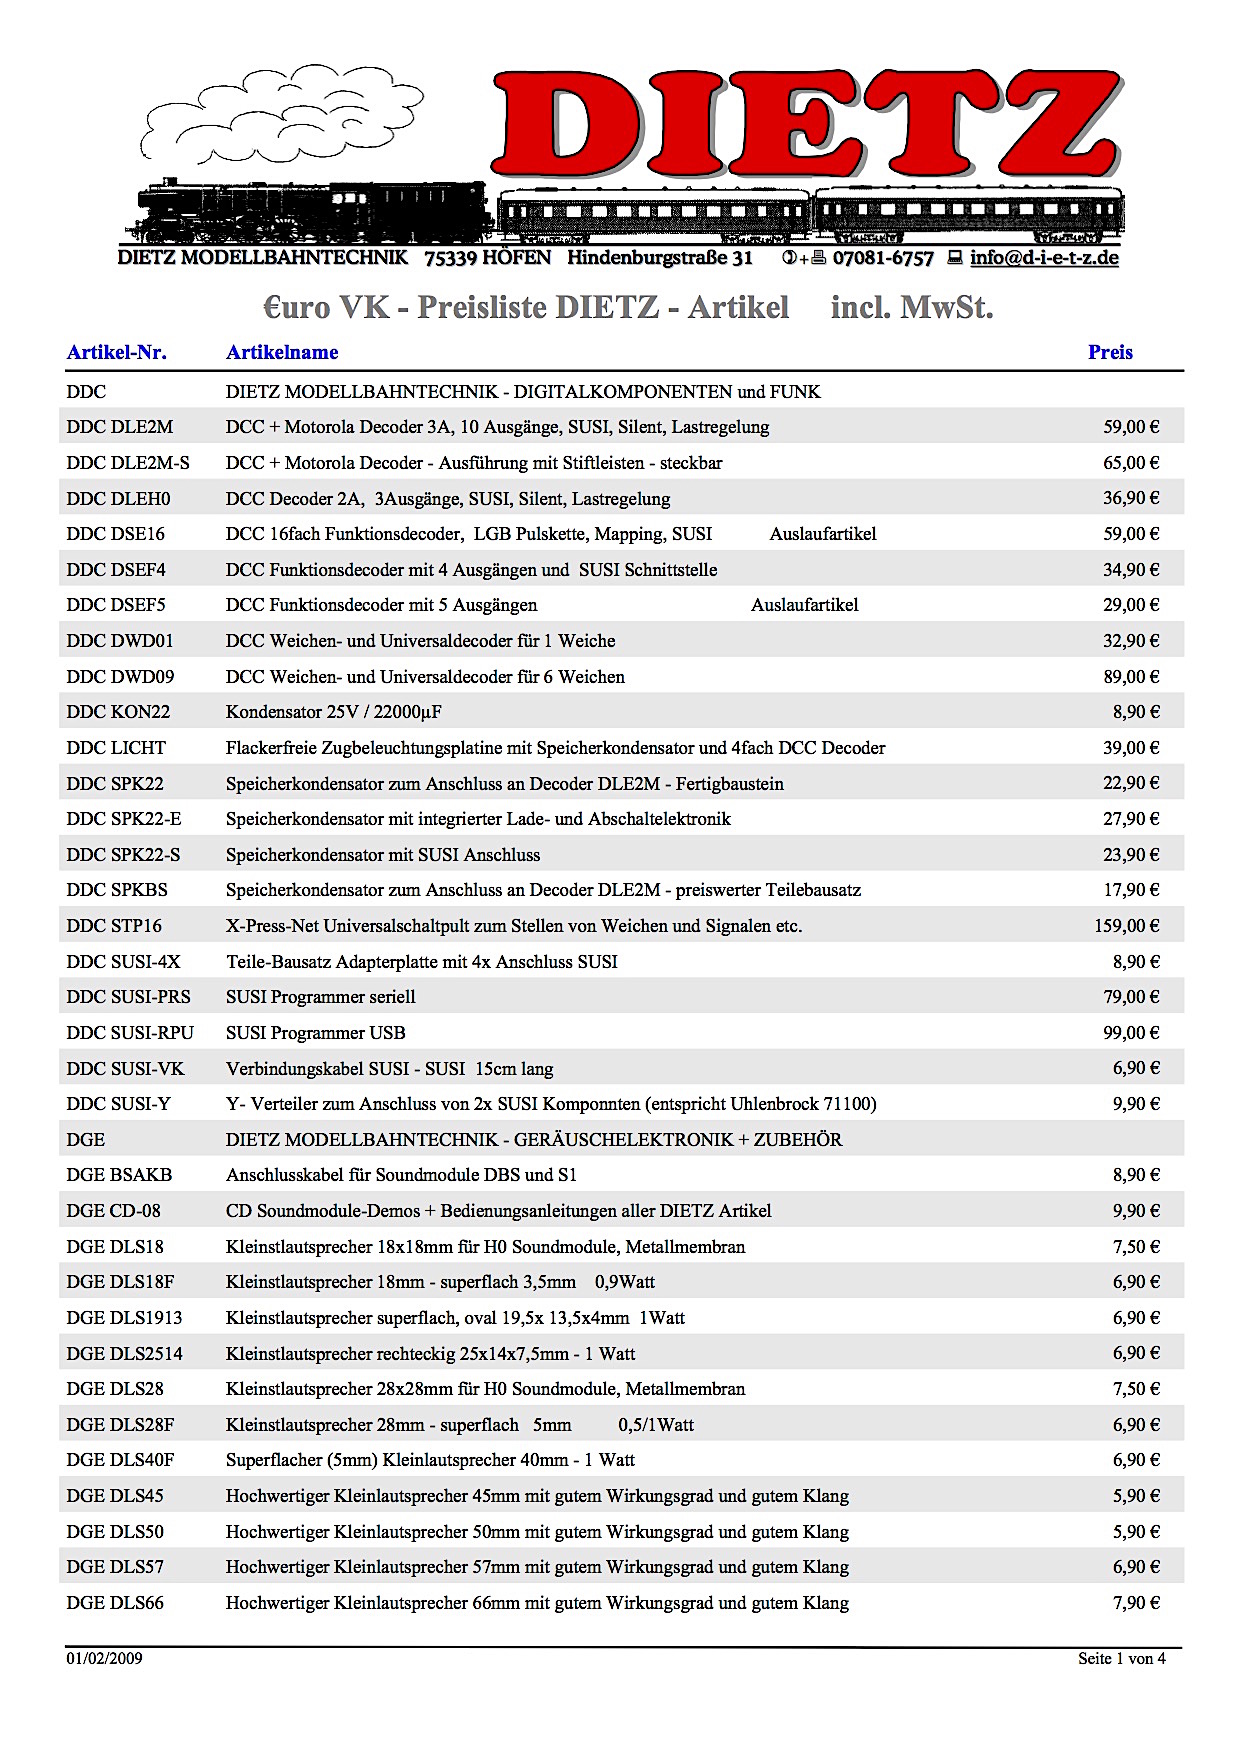 Dietz Preisliste (Price list) 2009